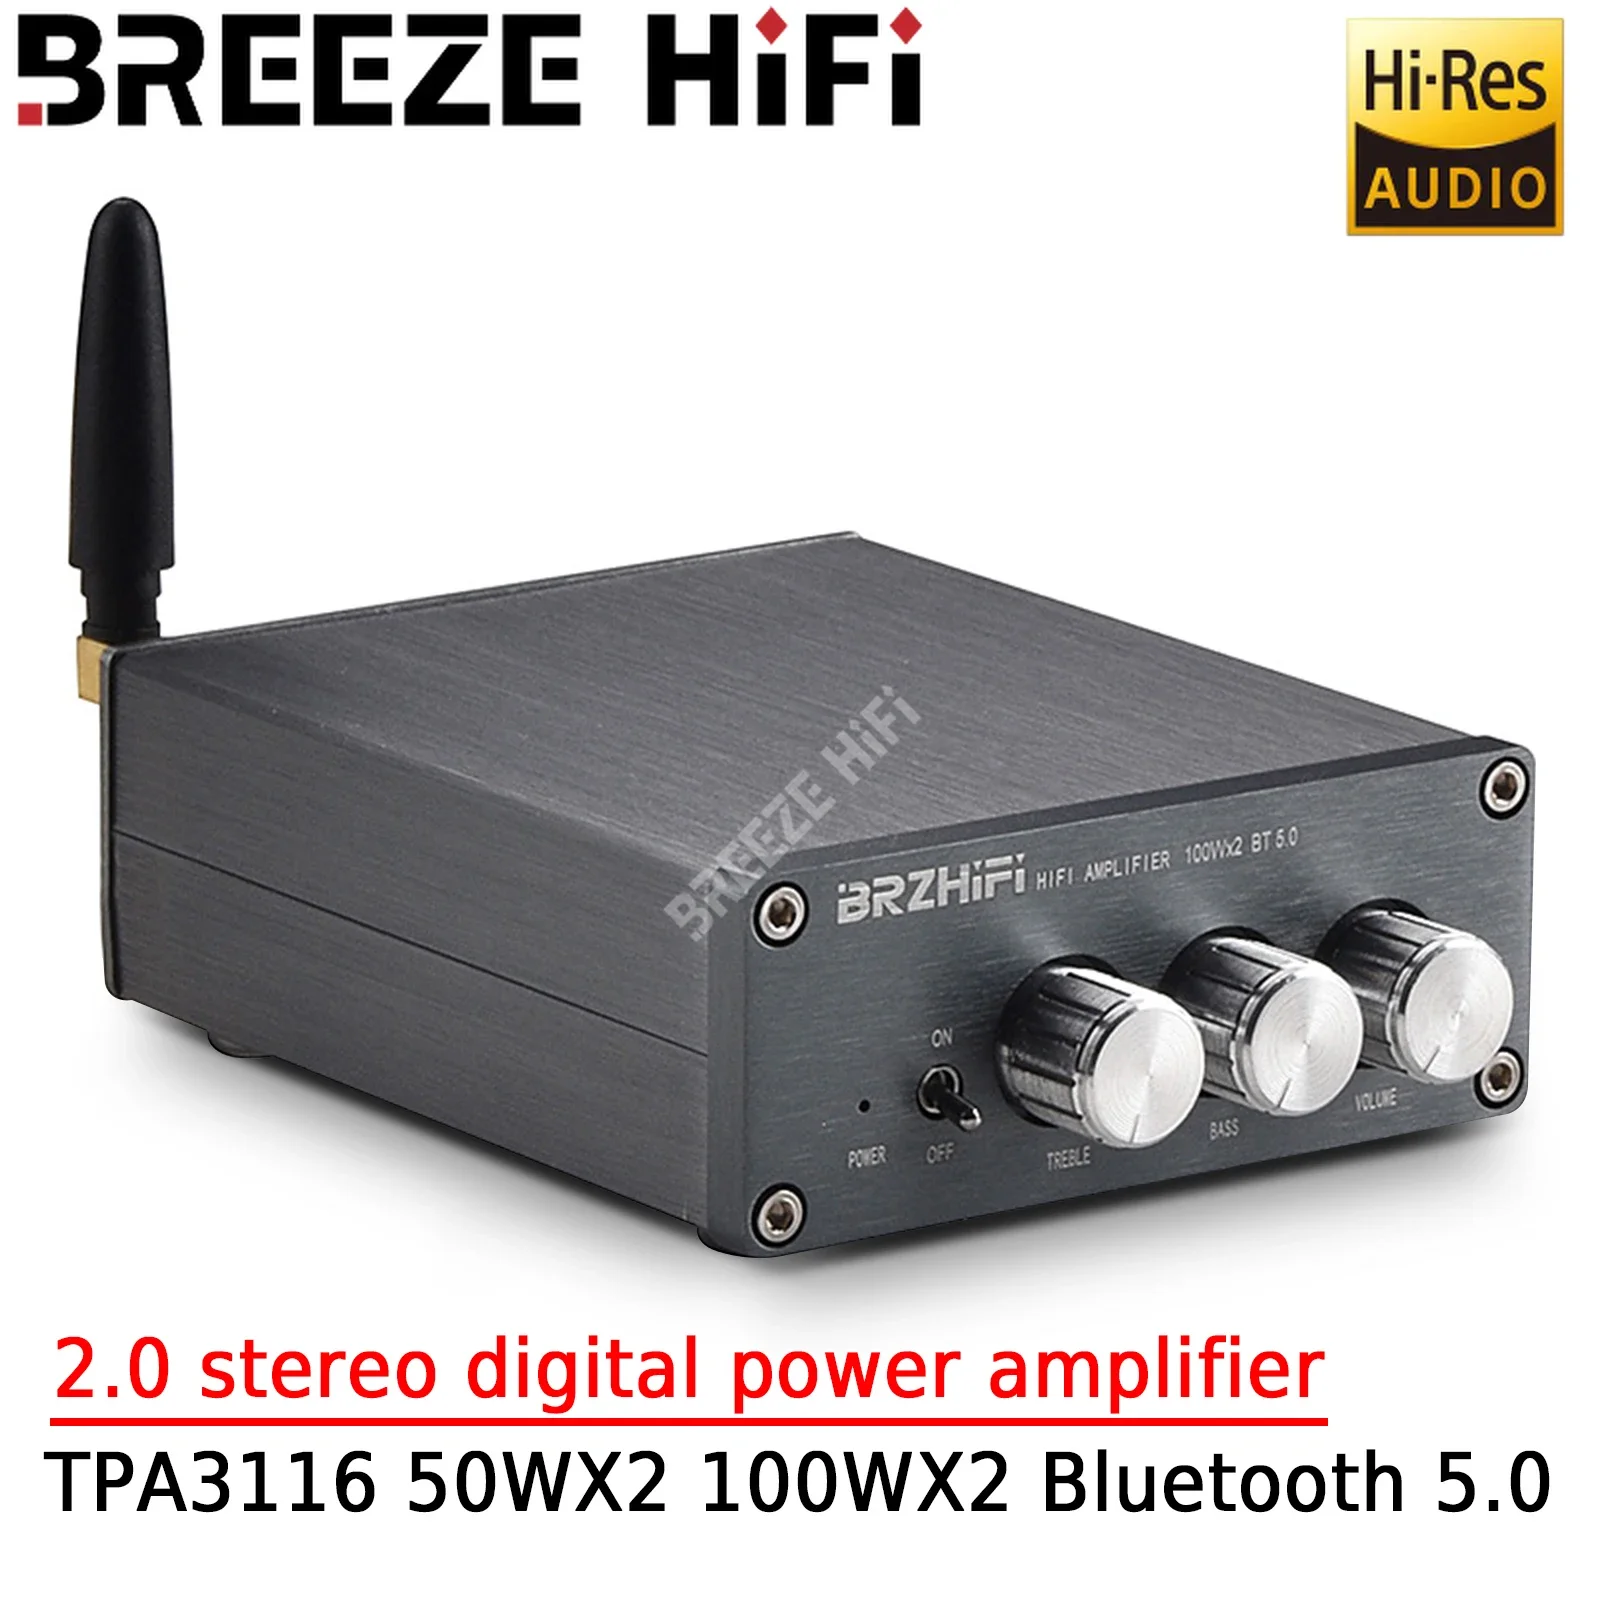 

Цифровой стерео усилитель BREEZE HIFI Fever Level 2,0 TPA3116 50WX2 100WX2 Bluetooth 5,0 домашний усилитель мощности